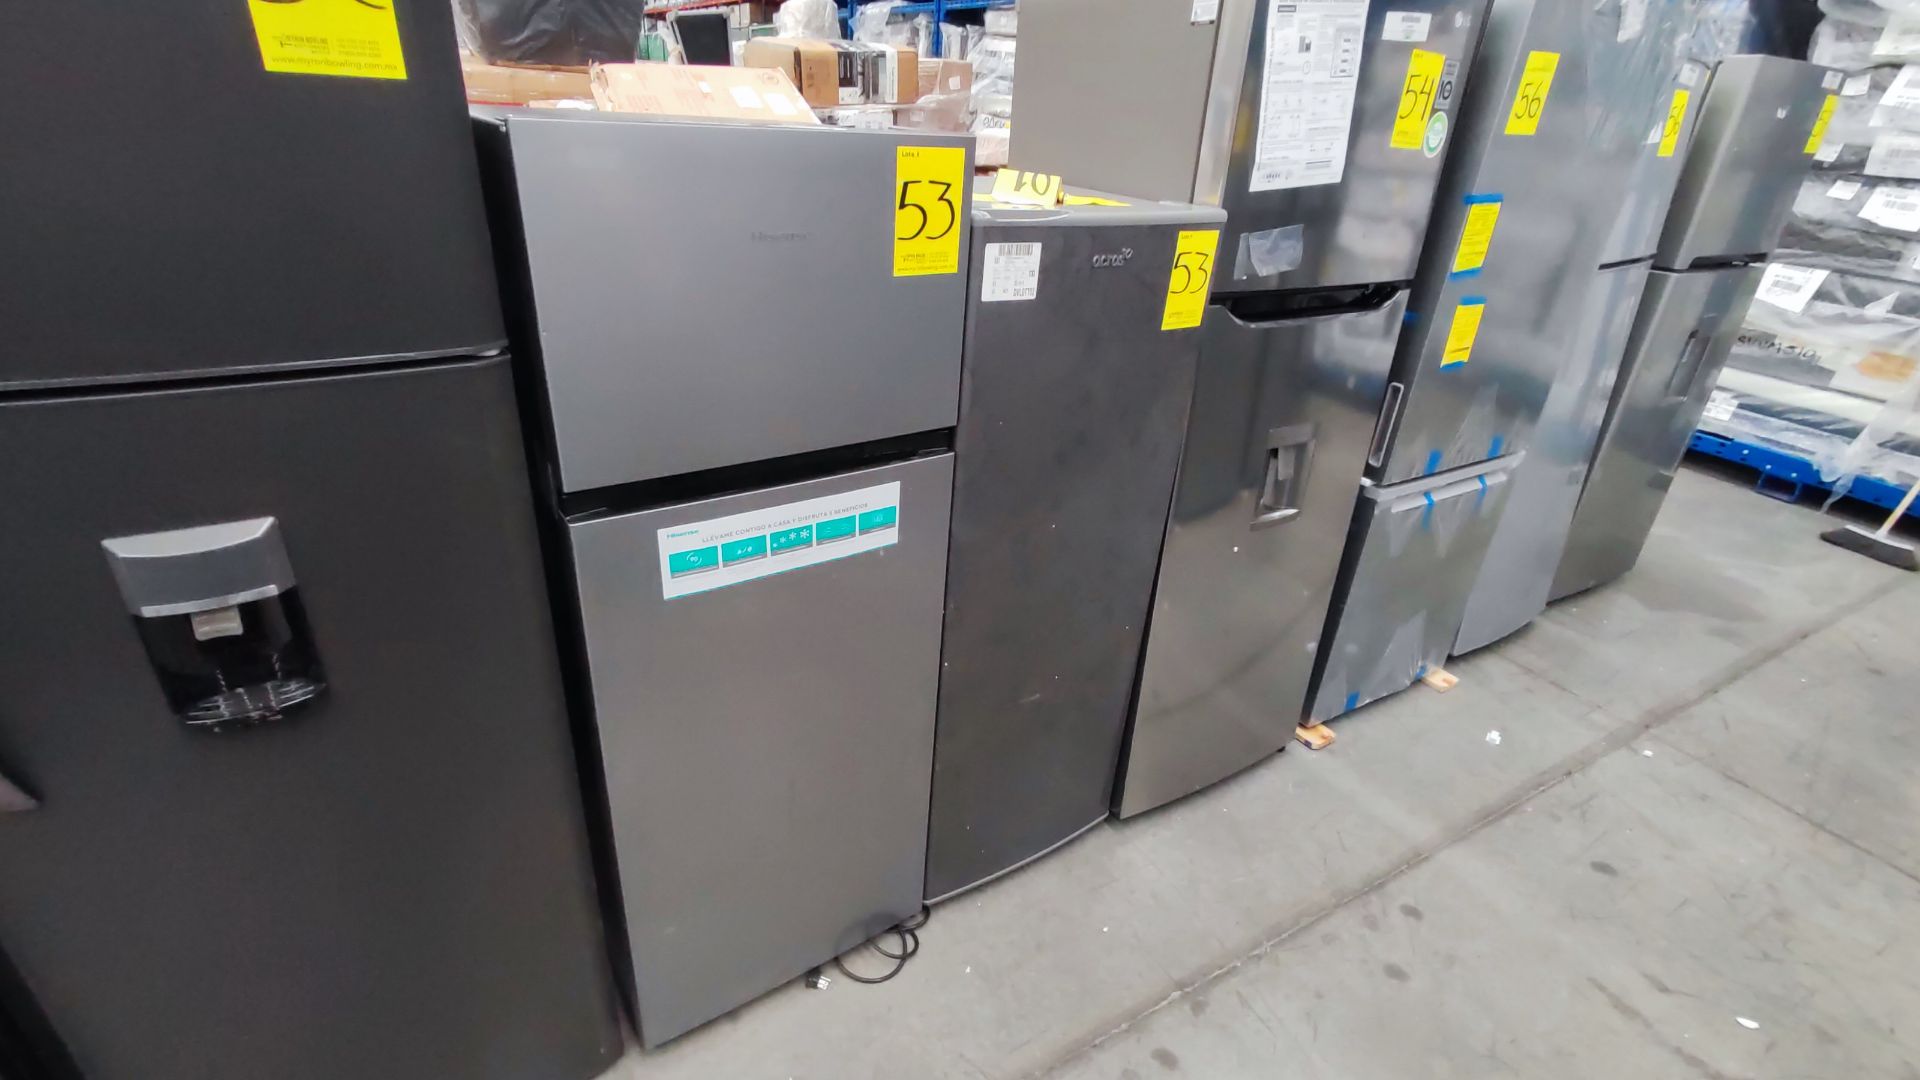 Lote de 2 Refrigeradores, Contiene; 1 Refrigerador Marca Hisense, Modelo BCYNY, Serie 1B0205Z0080JB - Image 7 of 11